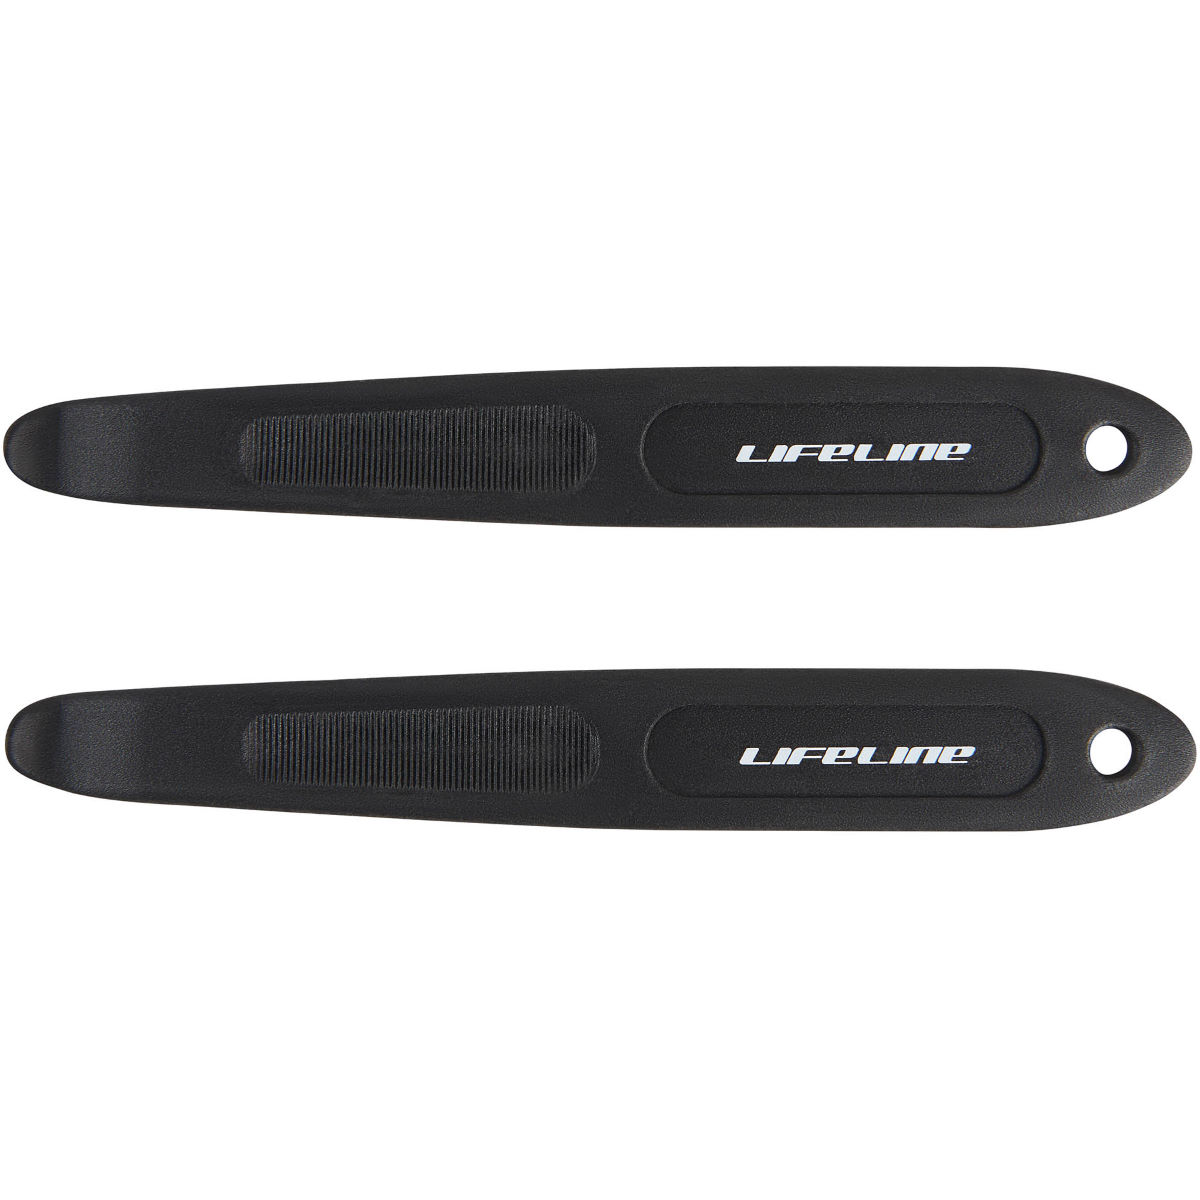 Desmontables de cubiertas largos LifeLine - X-Tools (plástico) - Desmontables para cubiertas